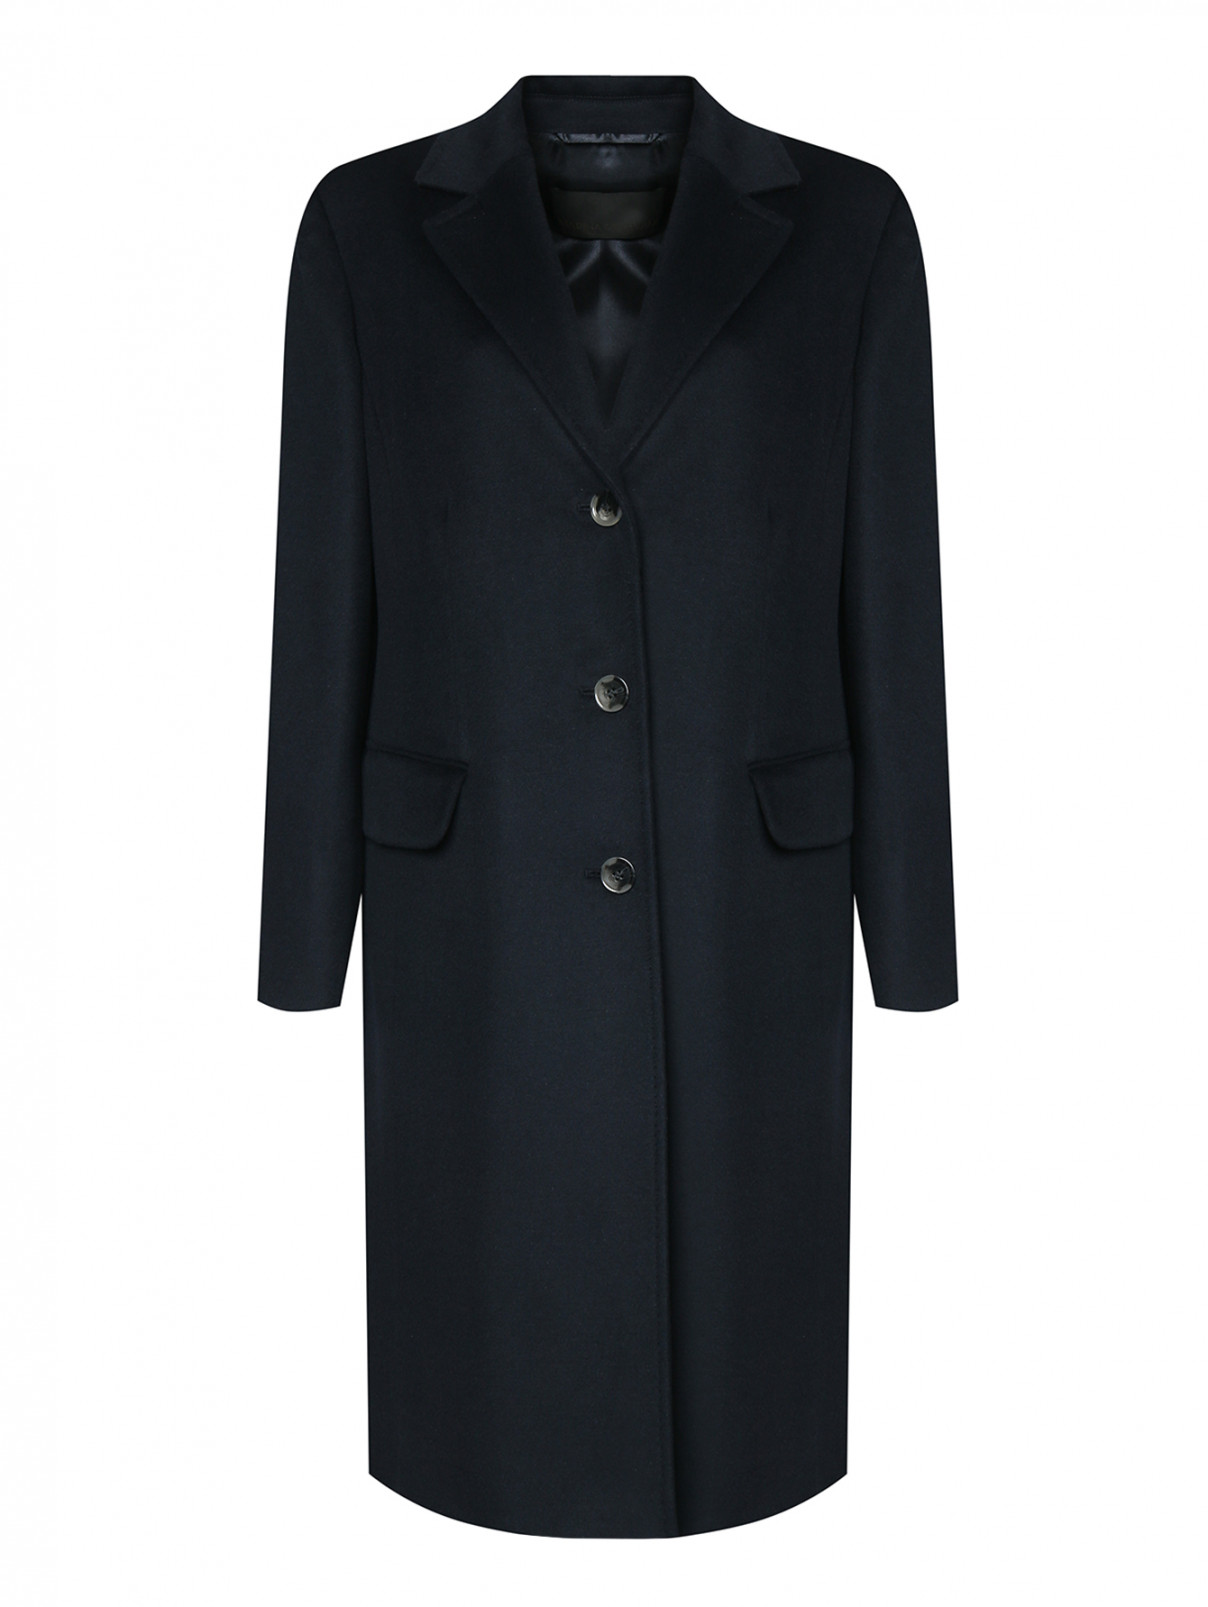 Пальто из шерсти на пуговицах с карманами Marina Rinaldi  –  Общий вид  – Цвет:  Синий